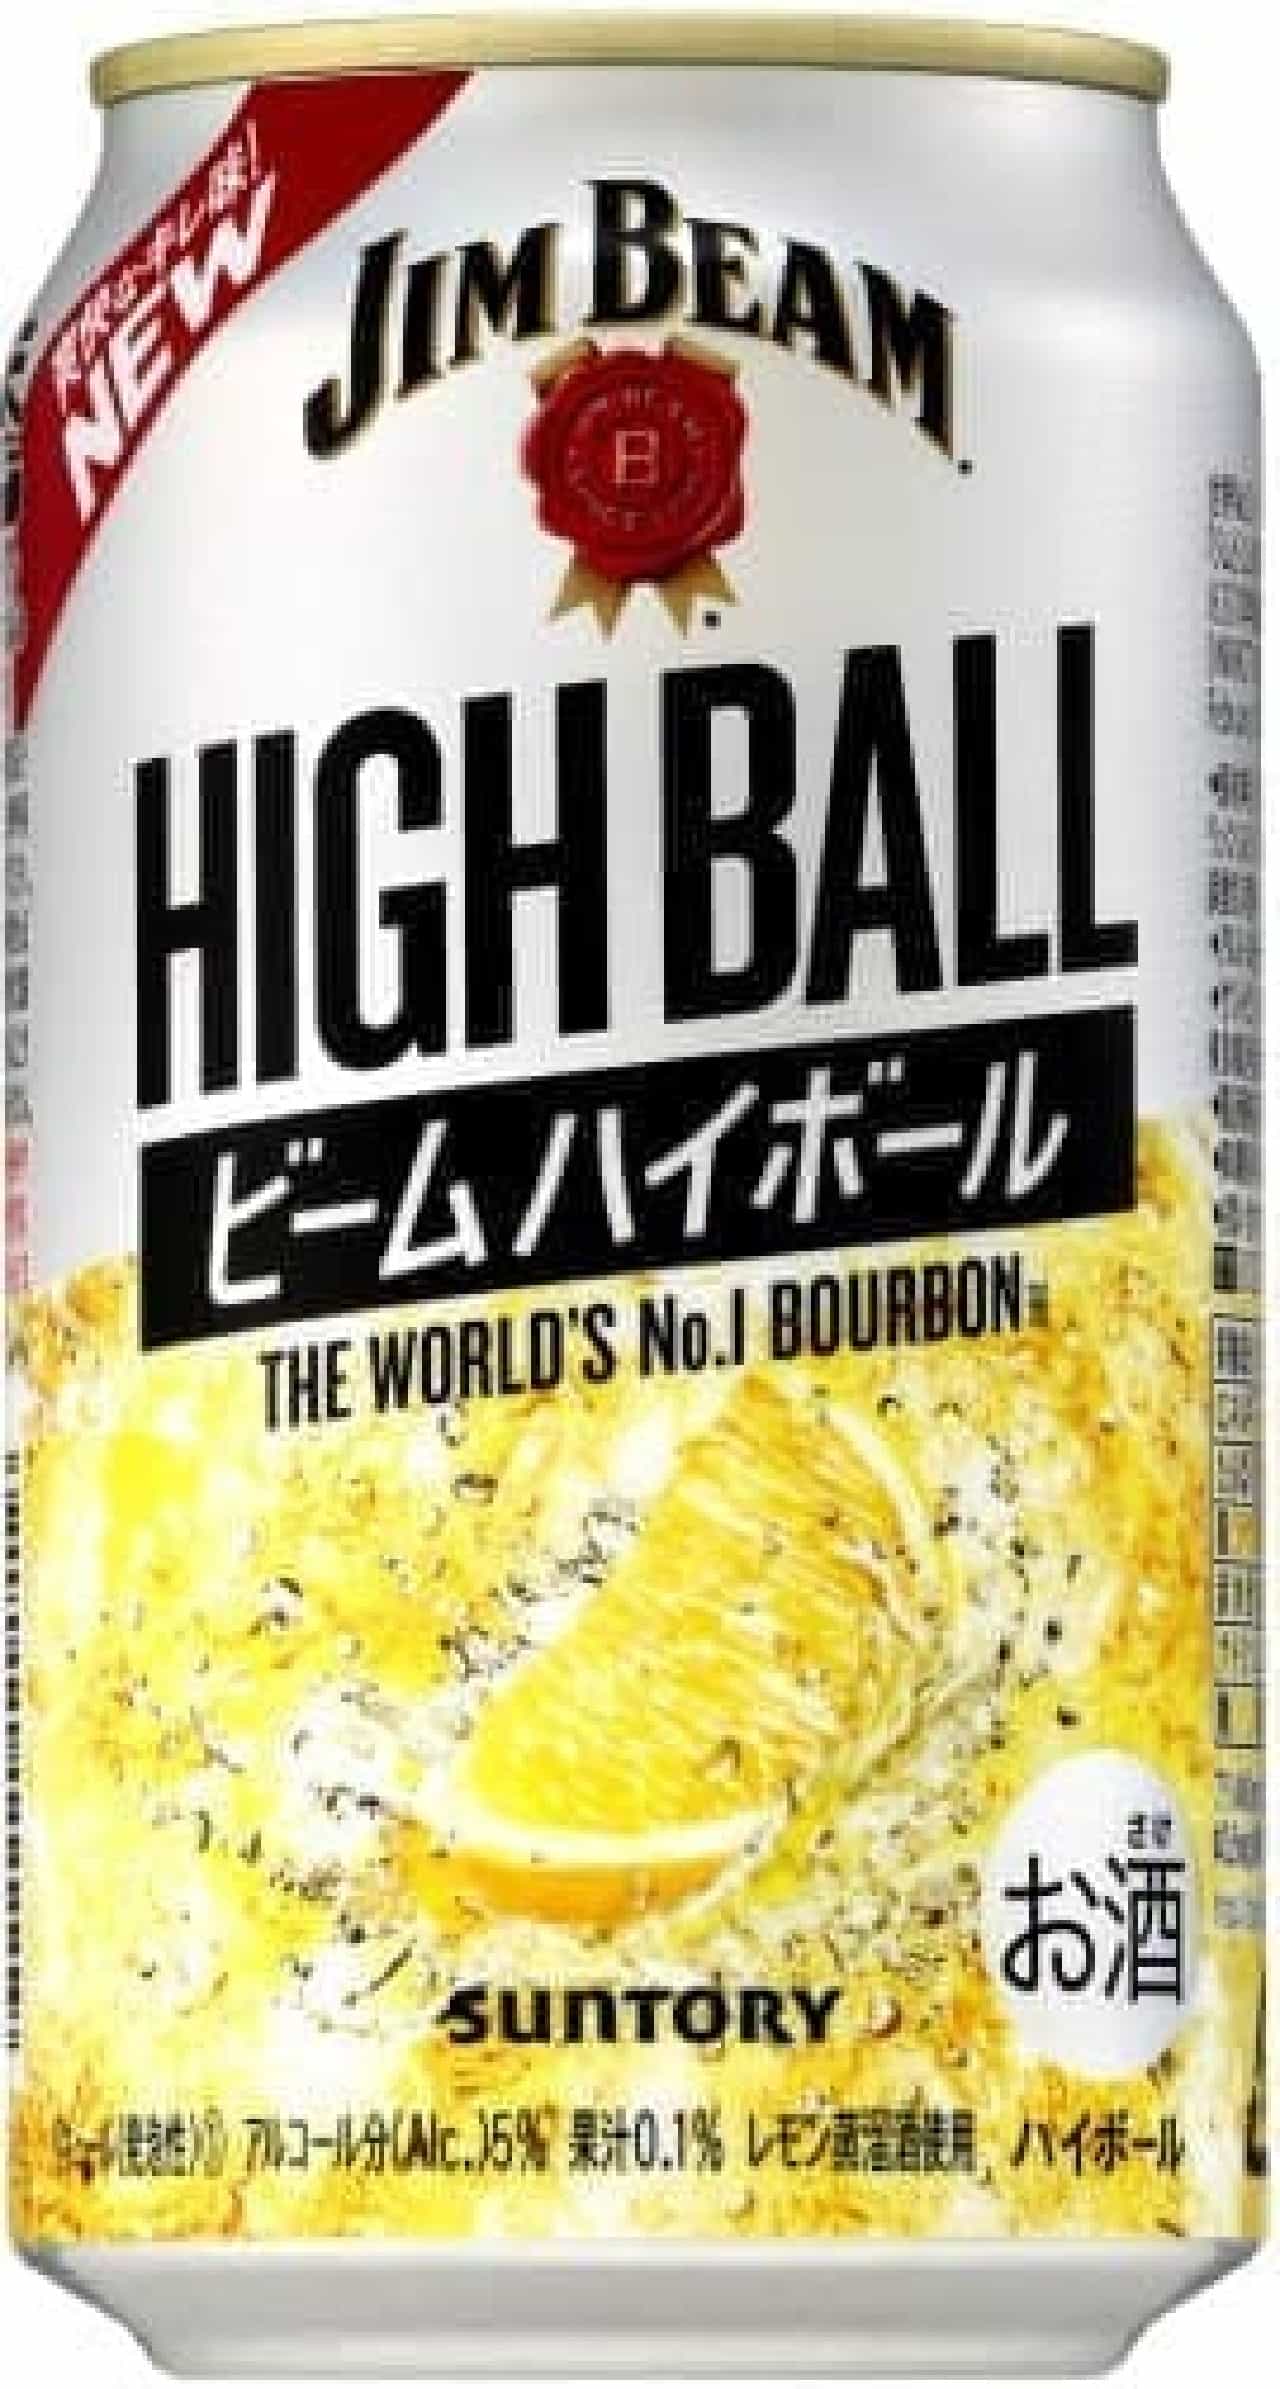 レモン風味が強くなった ジムビーム ハイボール缶 アルコール5 でより飲みやすく えん食べ